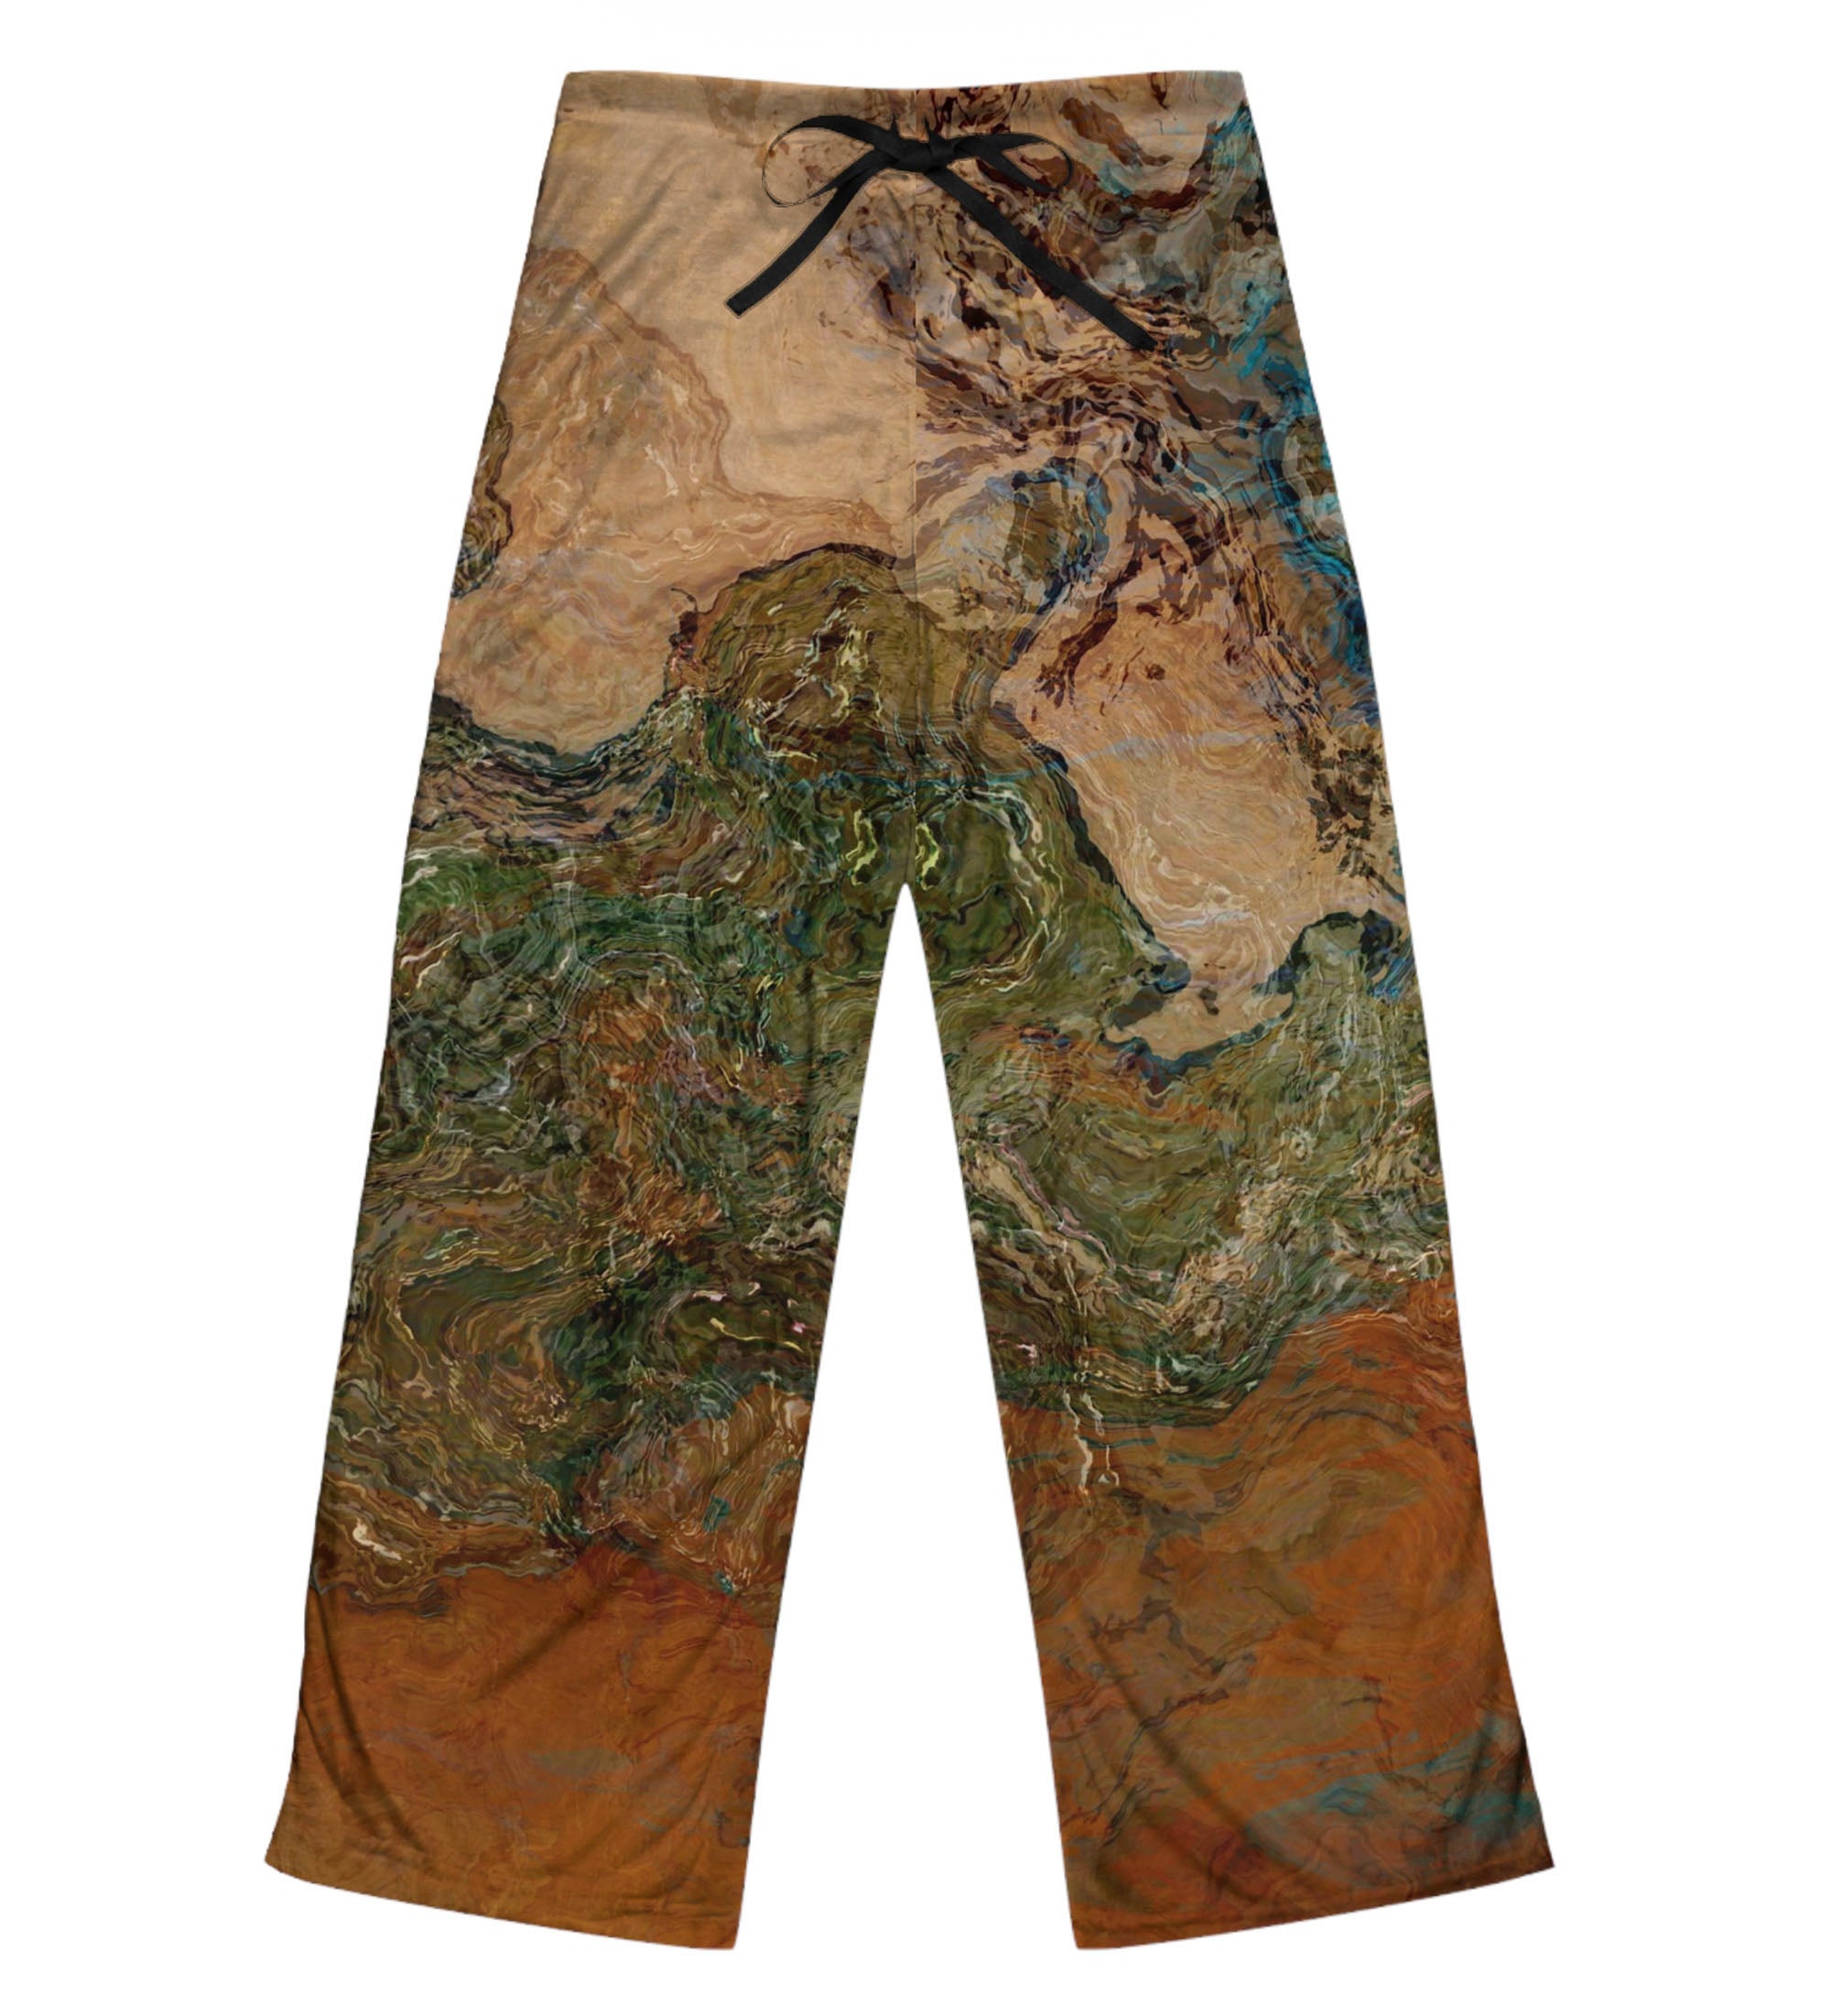 Women's Concepts Sport Navy/Gold West Virginia Mountaineers Breakthrough  Split Design Knit Sleep Pants